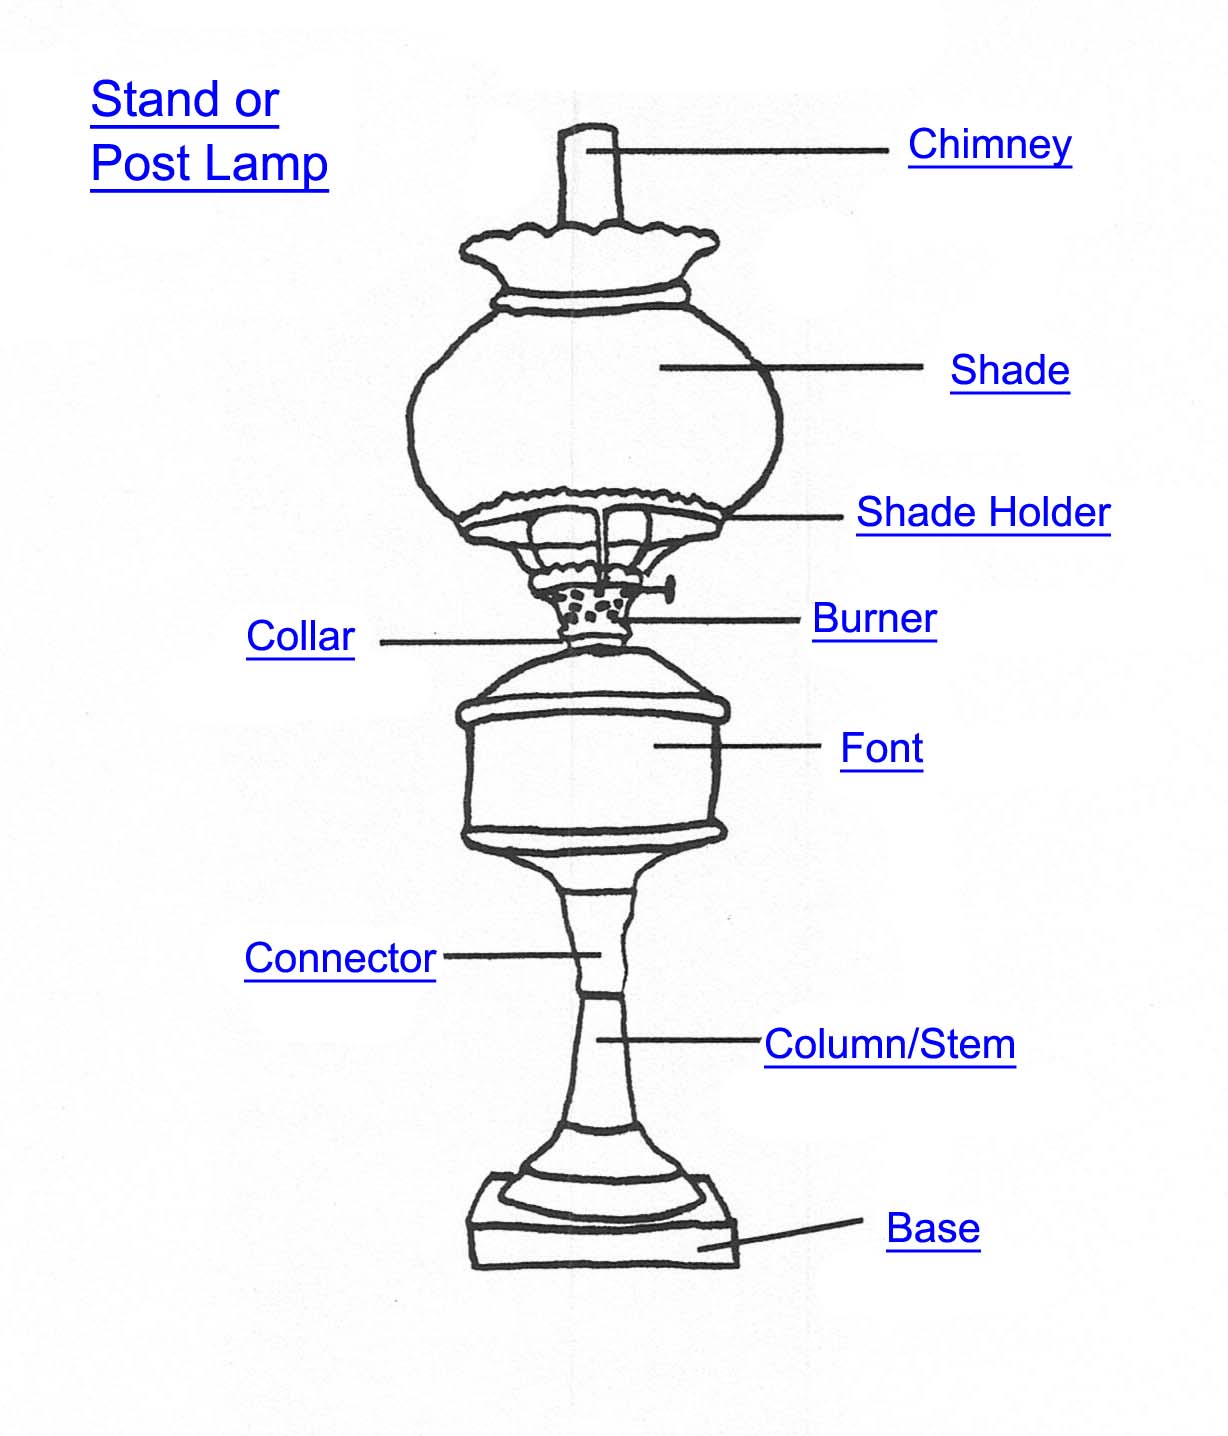 Post Lamp